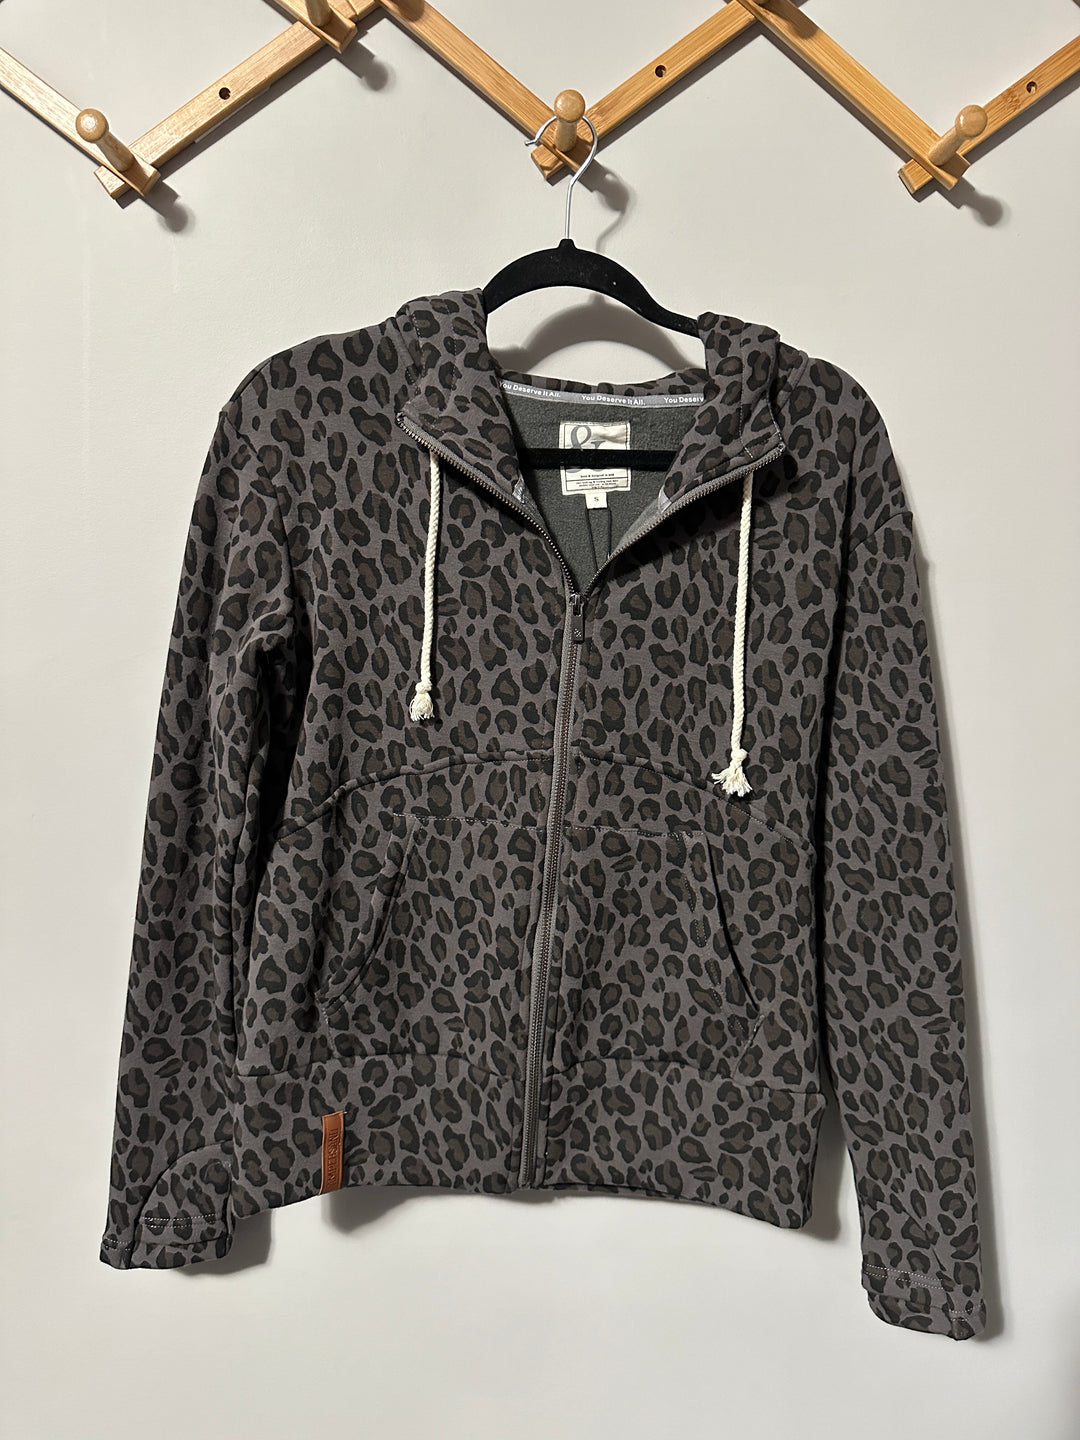 AS IS | Fleece Lined Full Zip | Leopard | SMALL